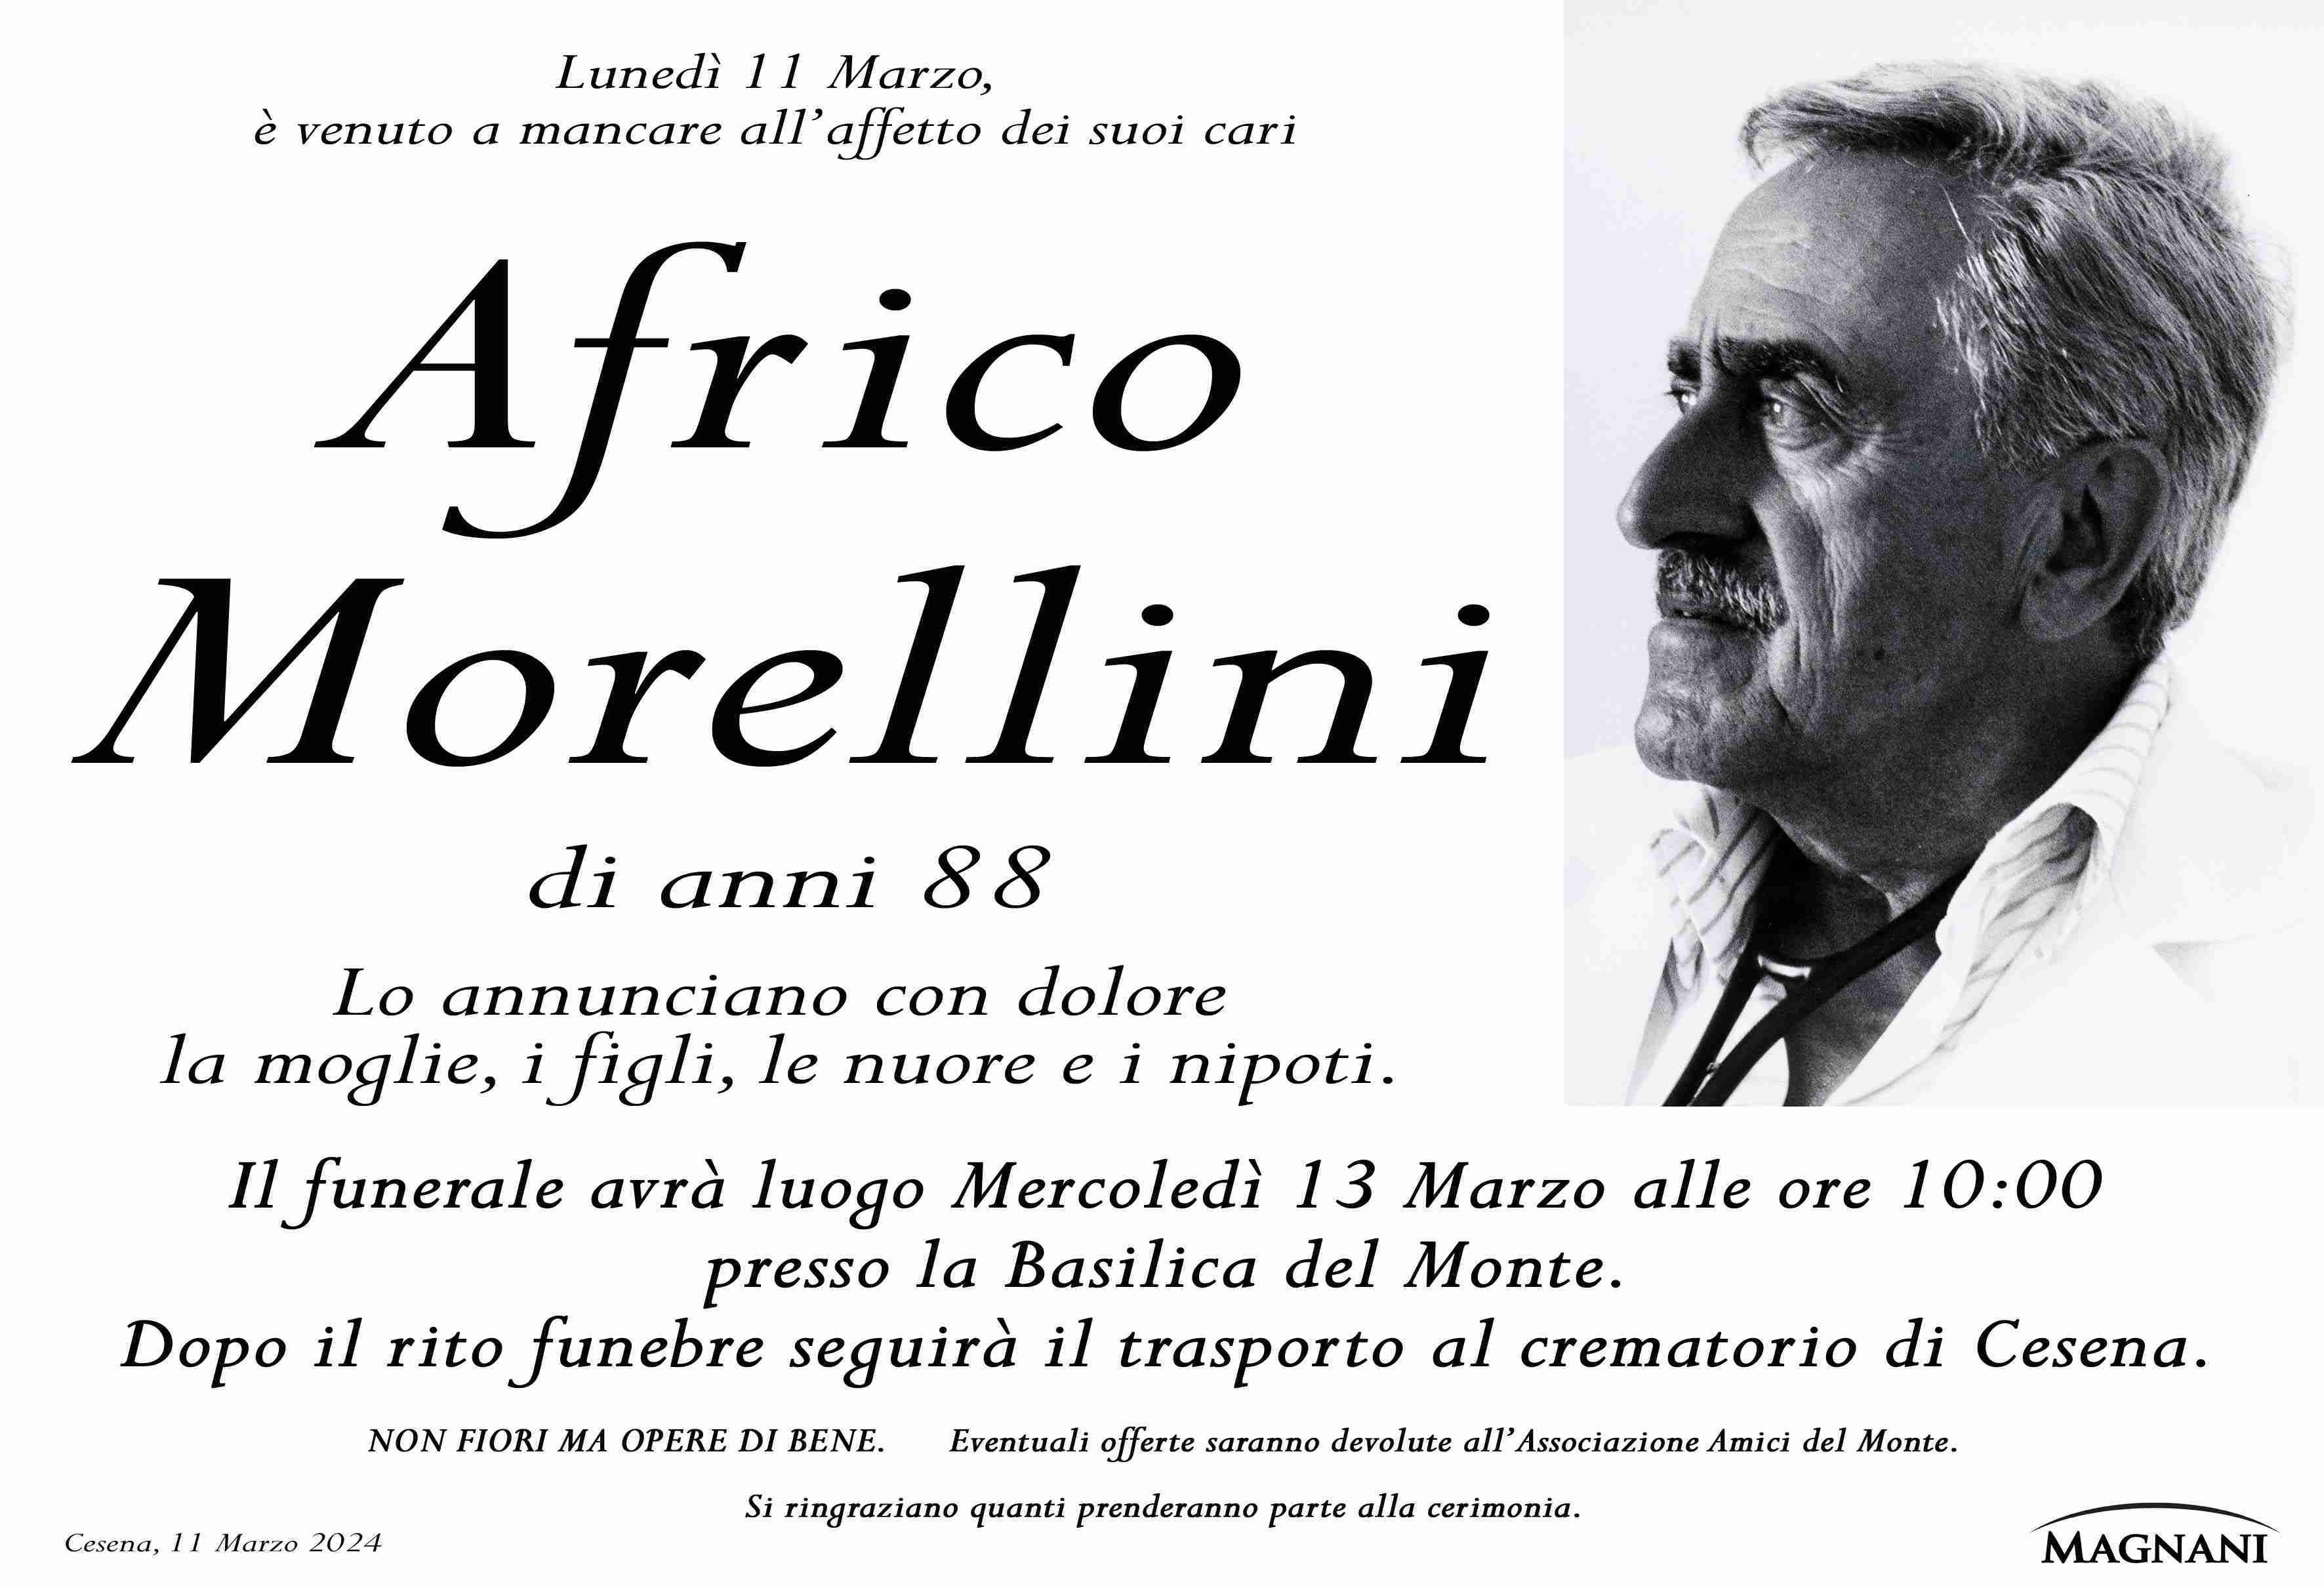 Africo Morellini